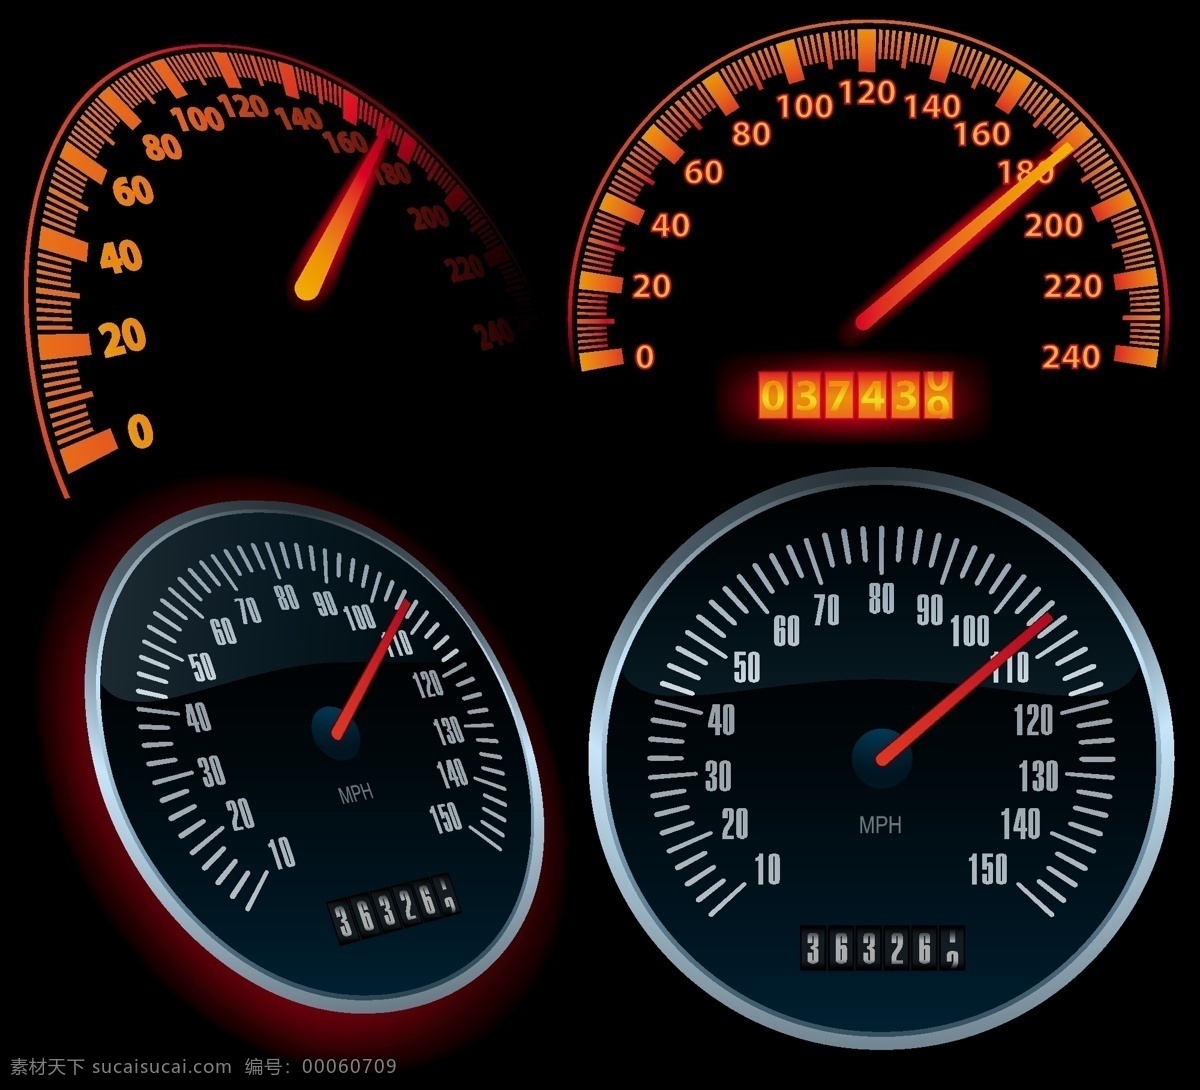 汽车 行驶 里程 车速 里程表 转速表 向量 发光 燃油表 数字 指针 圆 仪表板 辊轴 速度表 矢量图 日常生活